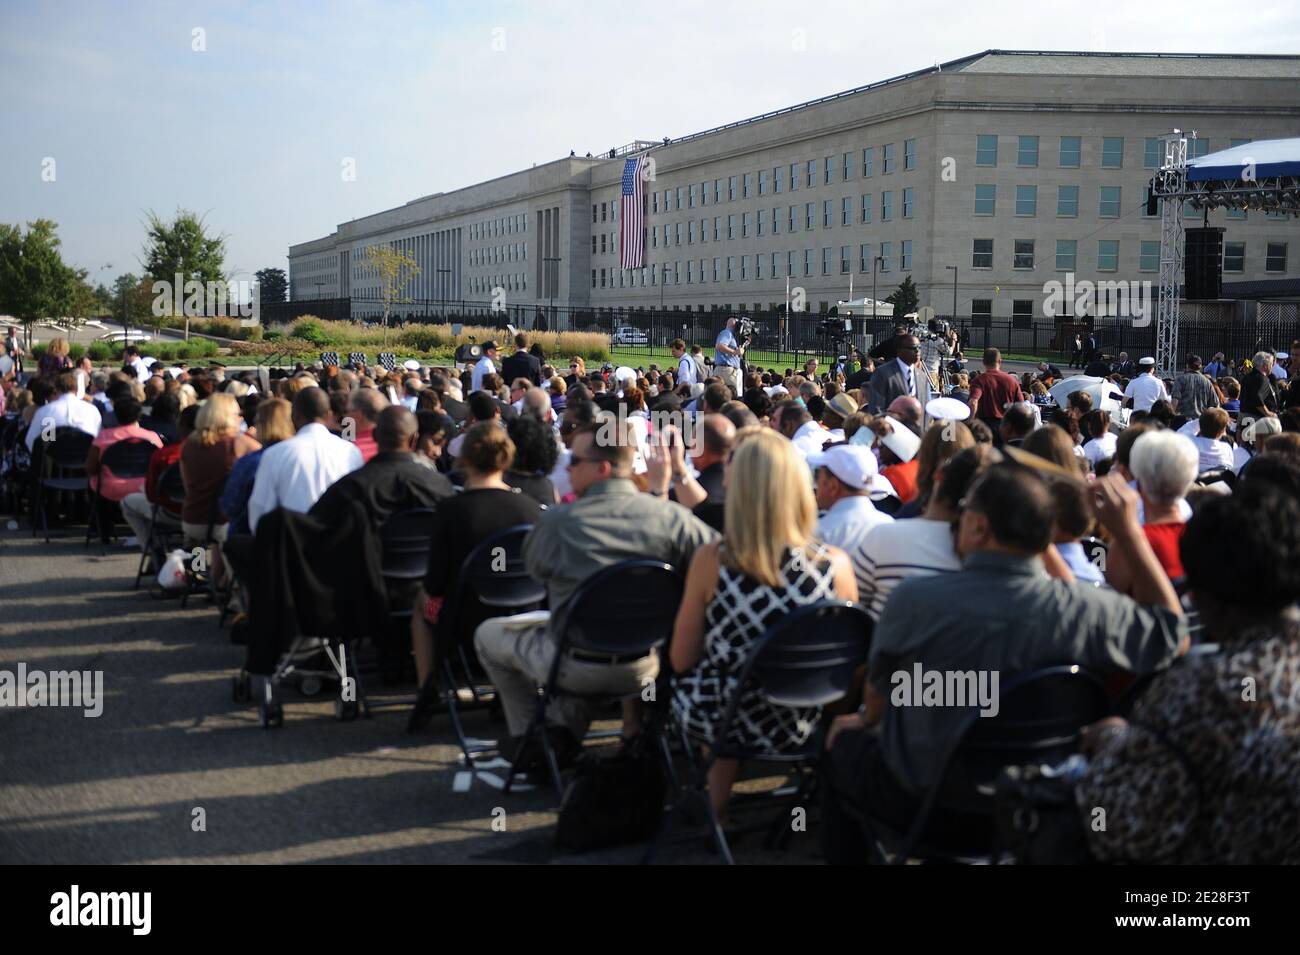 El Pentágono conmemora el décimo aniversario de los ataques terroristas del 9/11 2001 el 11 de septiembre de 2011 en Arlington, va, EE.UU.,. Foto de Olivier Douliery/ABACAPRESS.COM Foto de stock